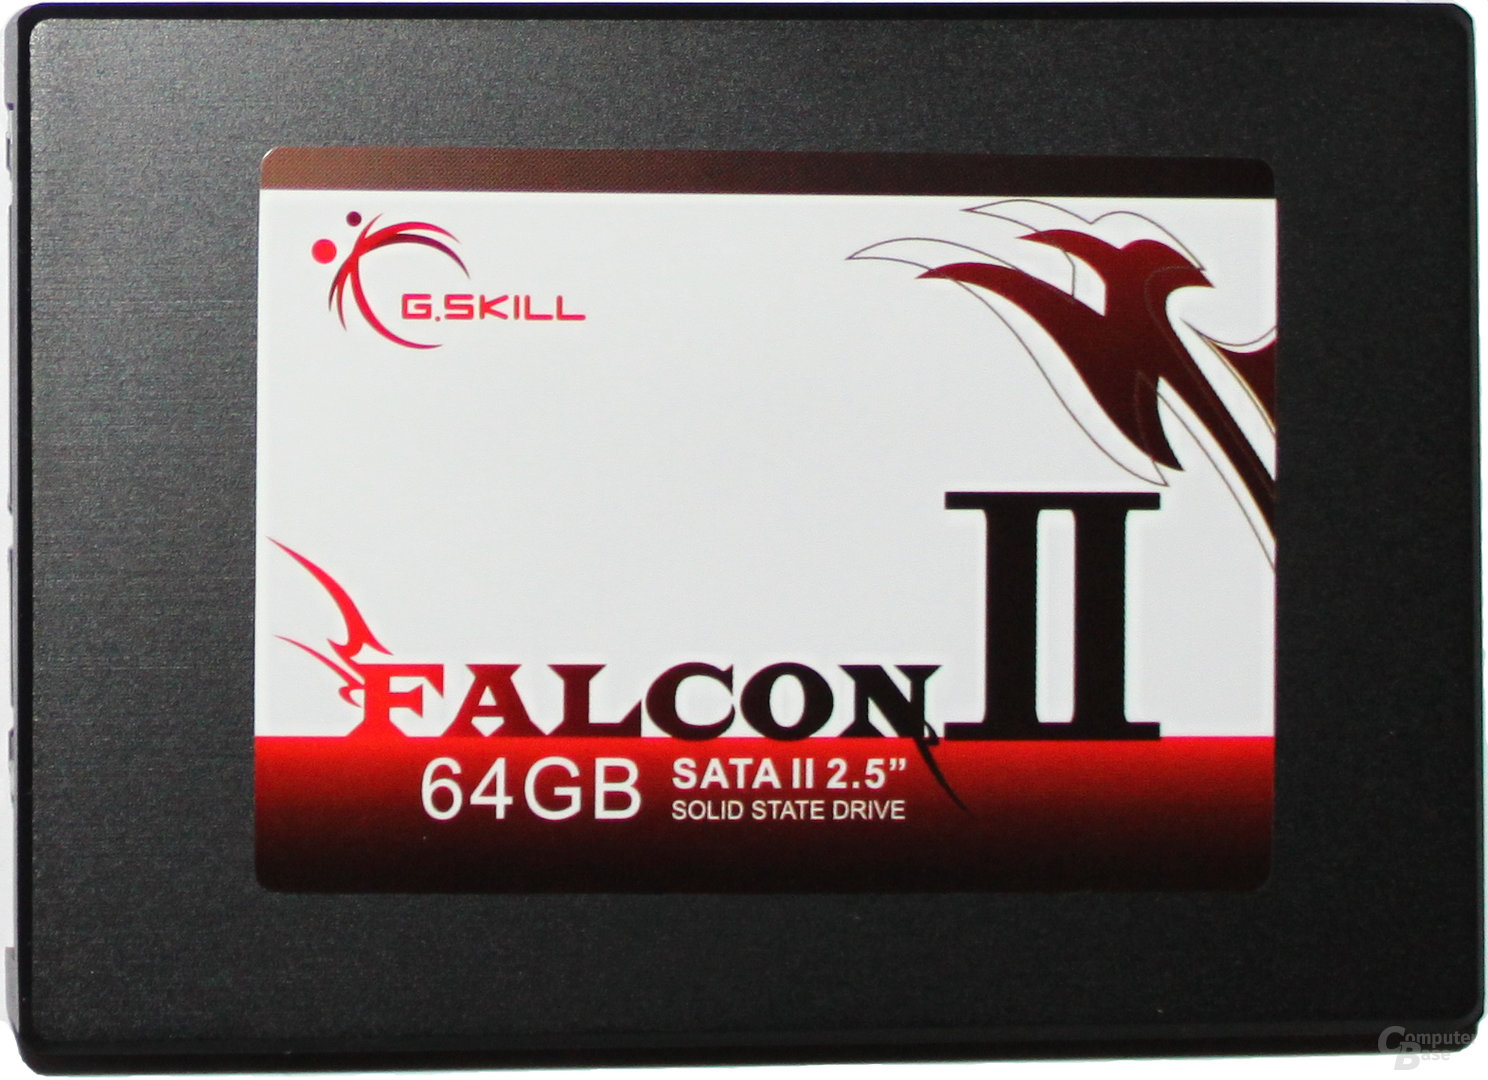 G.Skill Falcon II